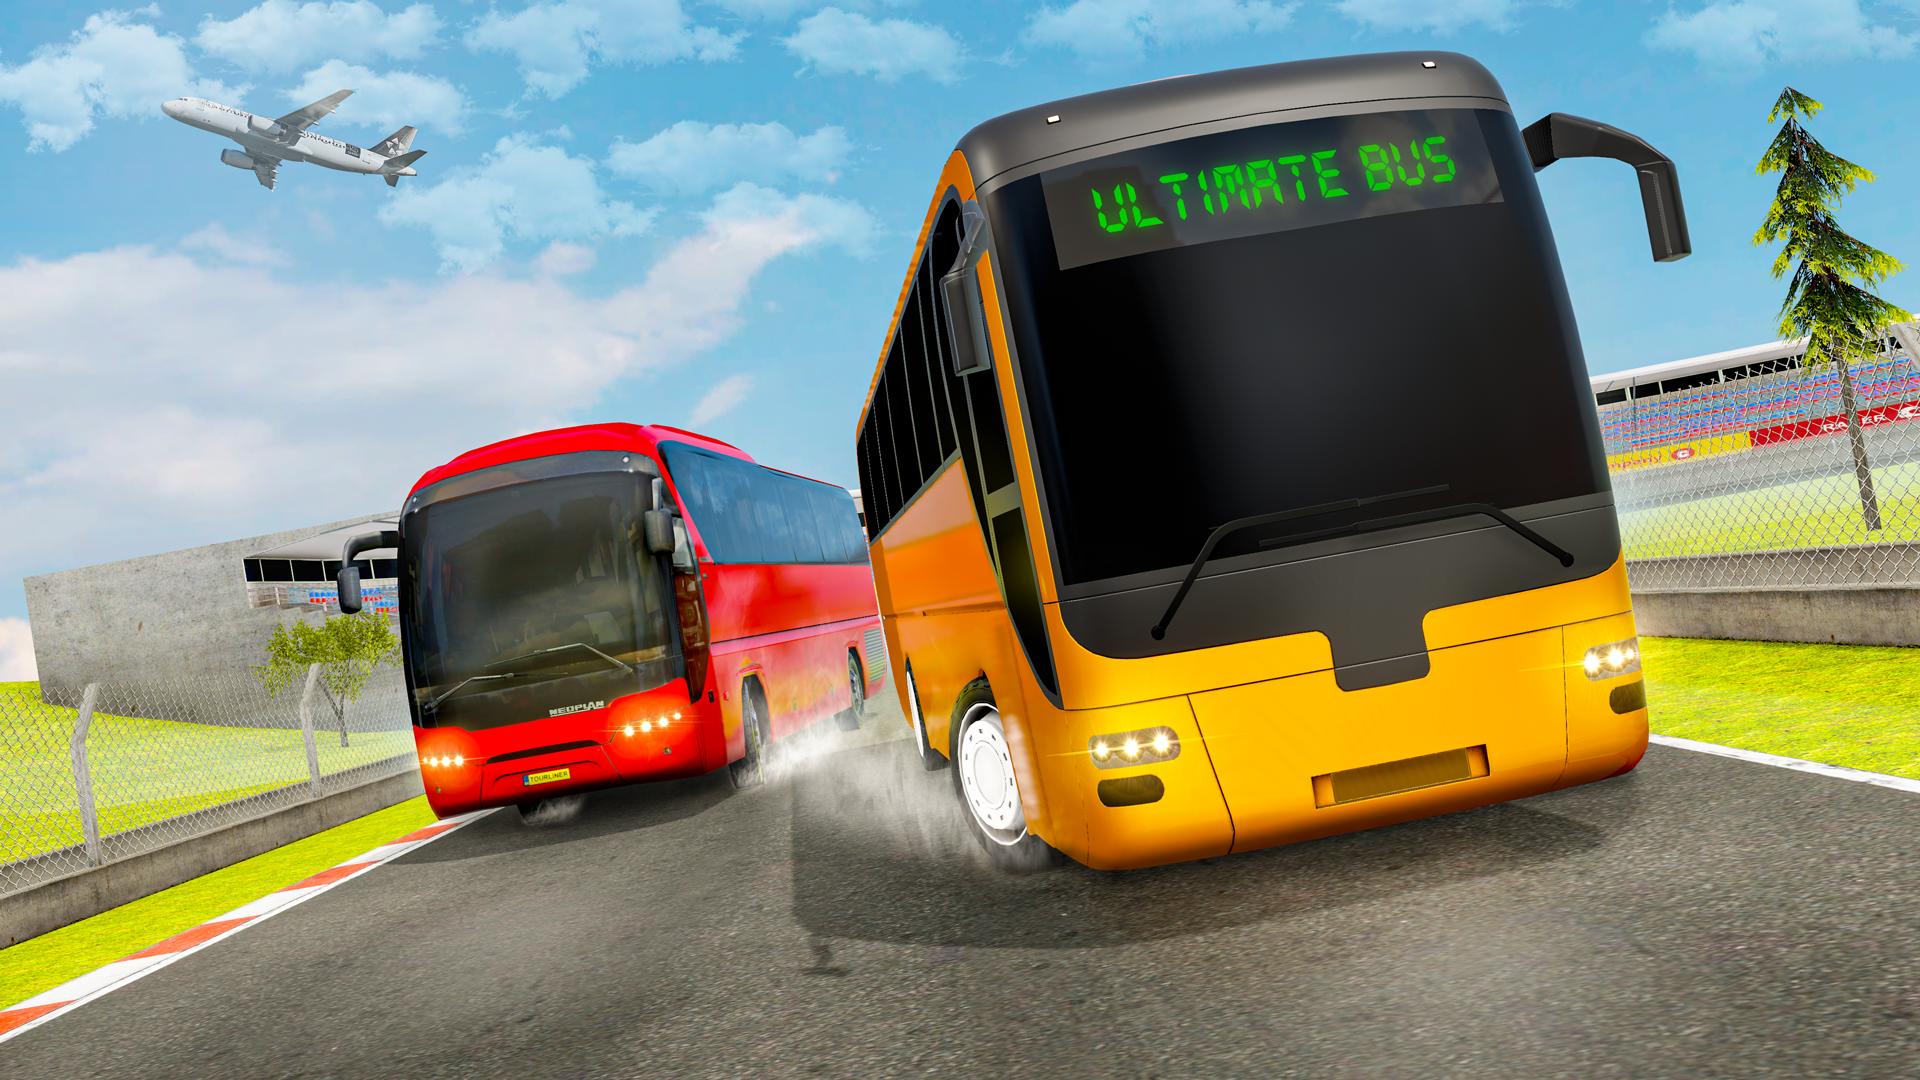 Ultimate автобус игры. Автобус симулятор ультимейт. Bus Simulator Ultimate автобусы. Мультиплеер автобус. Игра автобус 2018 симулятор.